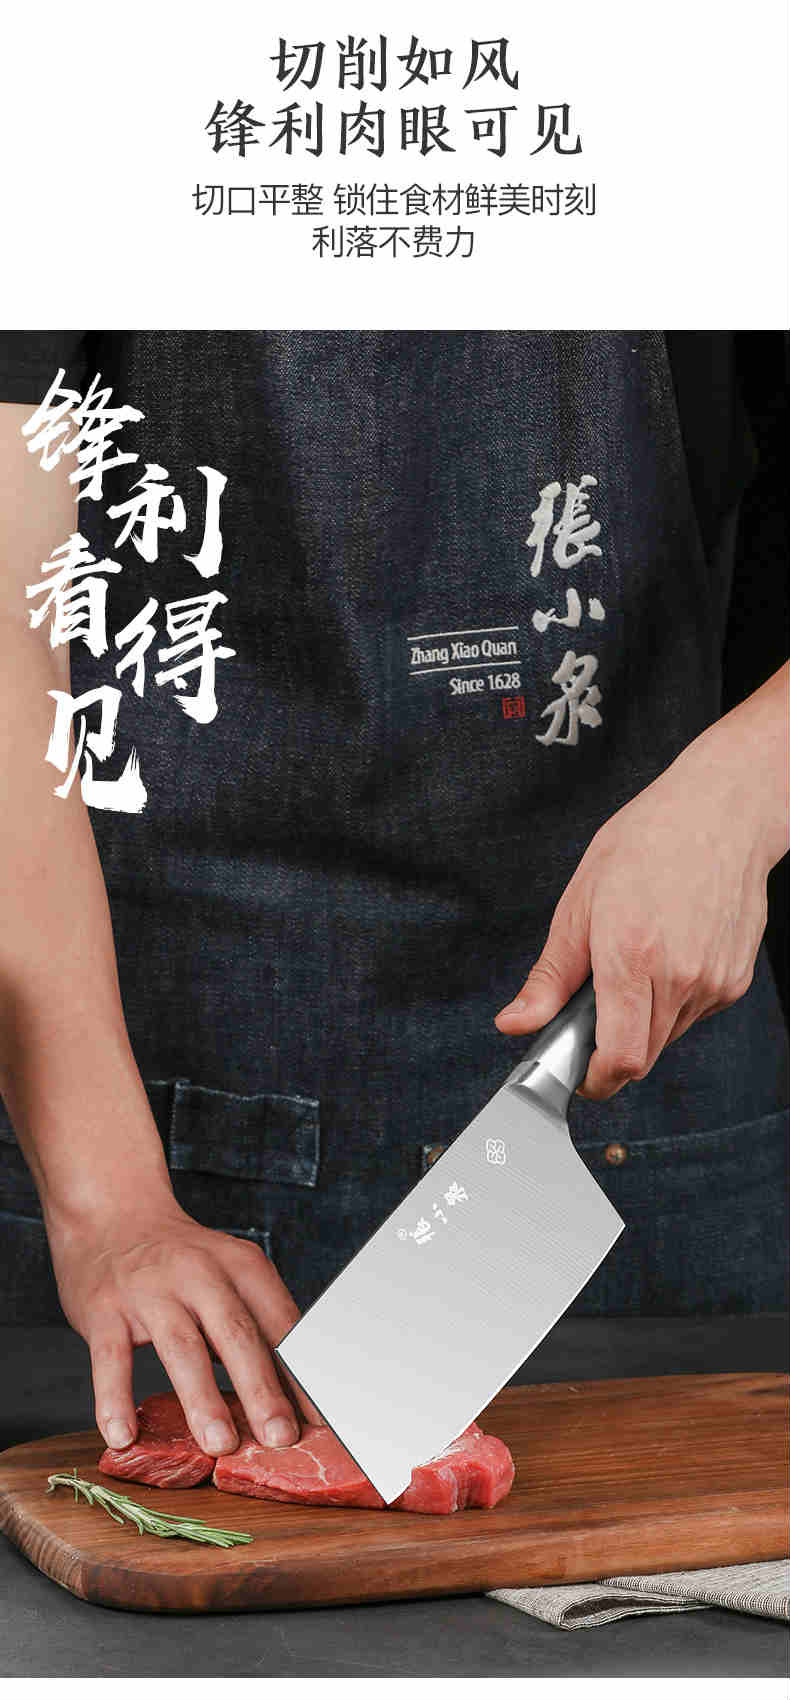  张小泉银狐系列厨房用刀五件套不锈钢组合切菜切肉水果刀剪刀包邮